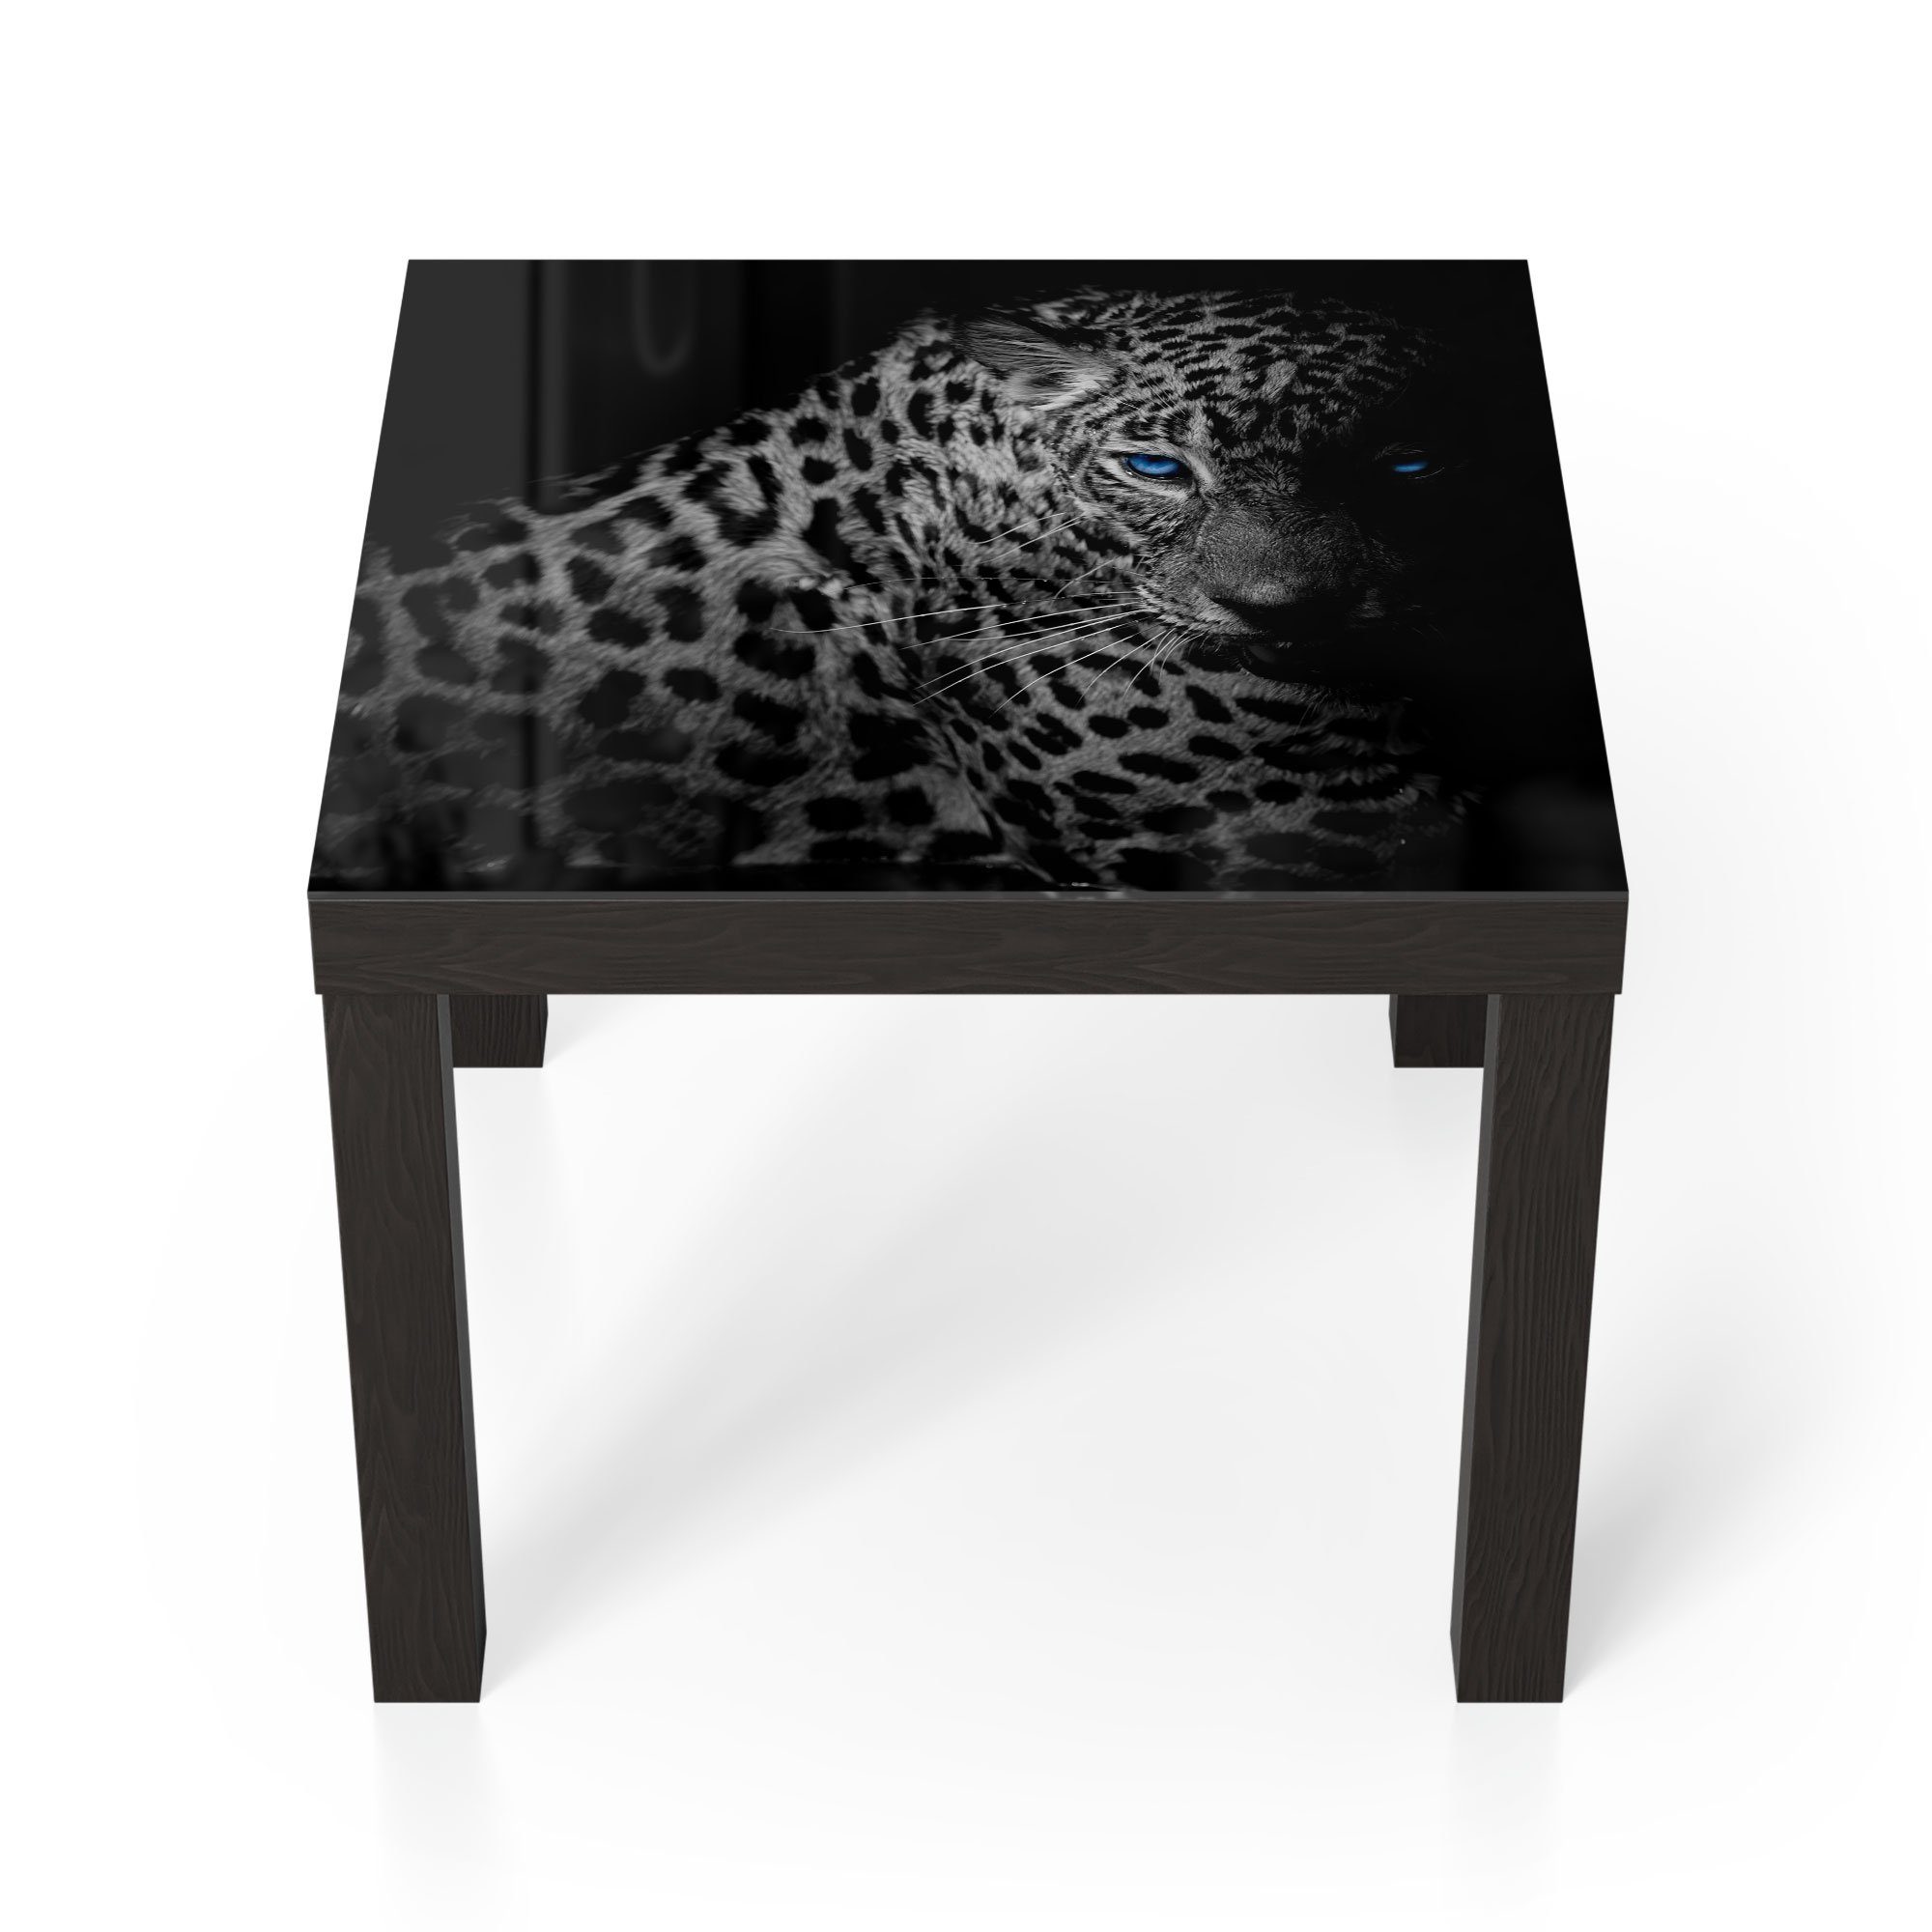 DEQORI Couchtisch 'Leopard mit blauen Augen', Glas Beistelltisch Glastisch  modern